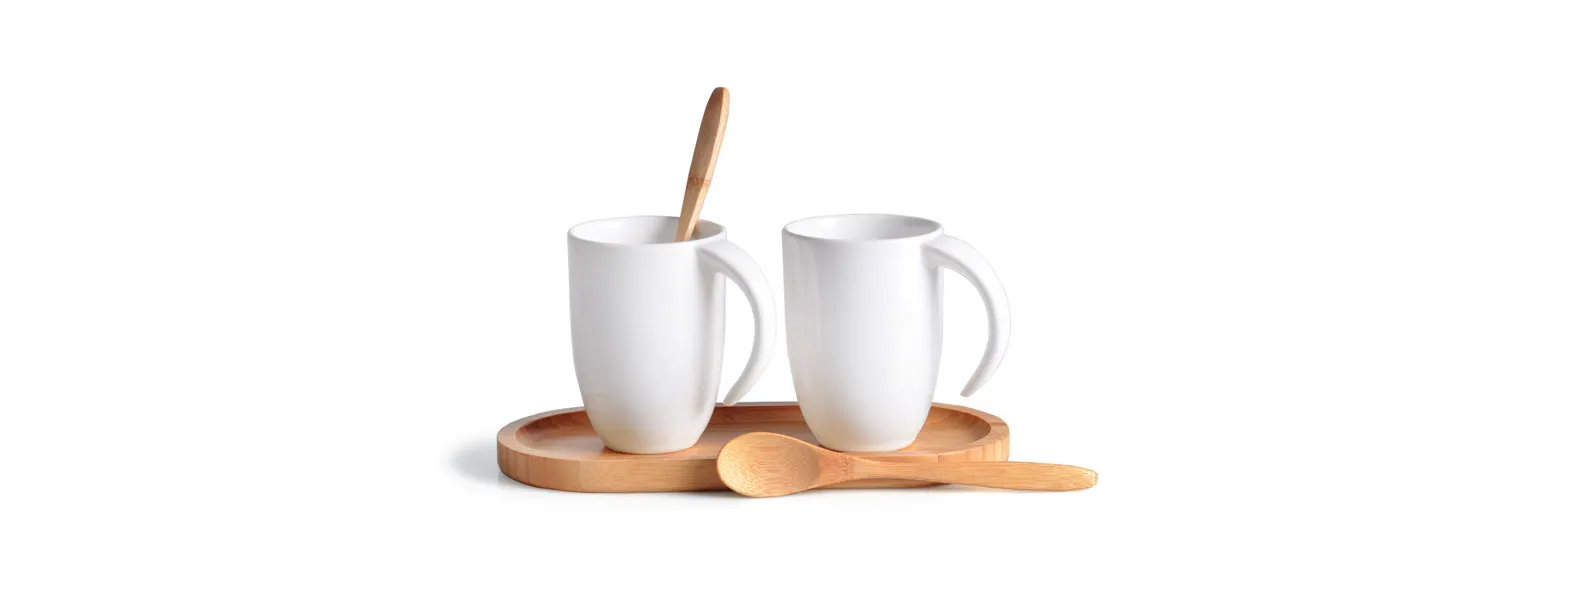 Kit para café/chá. Composto por bandeja oval e duas colheres de 18 cm em bambu; duas canecas em cerâmica branca com 350 ml cada uma.